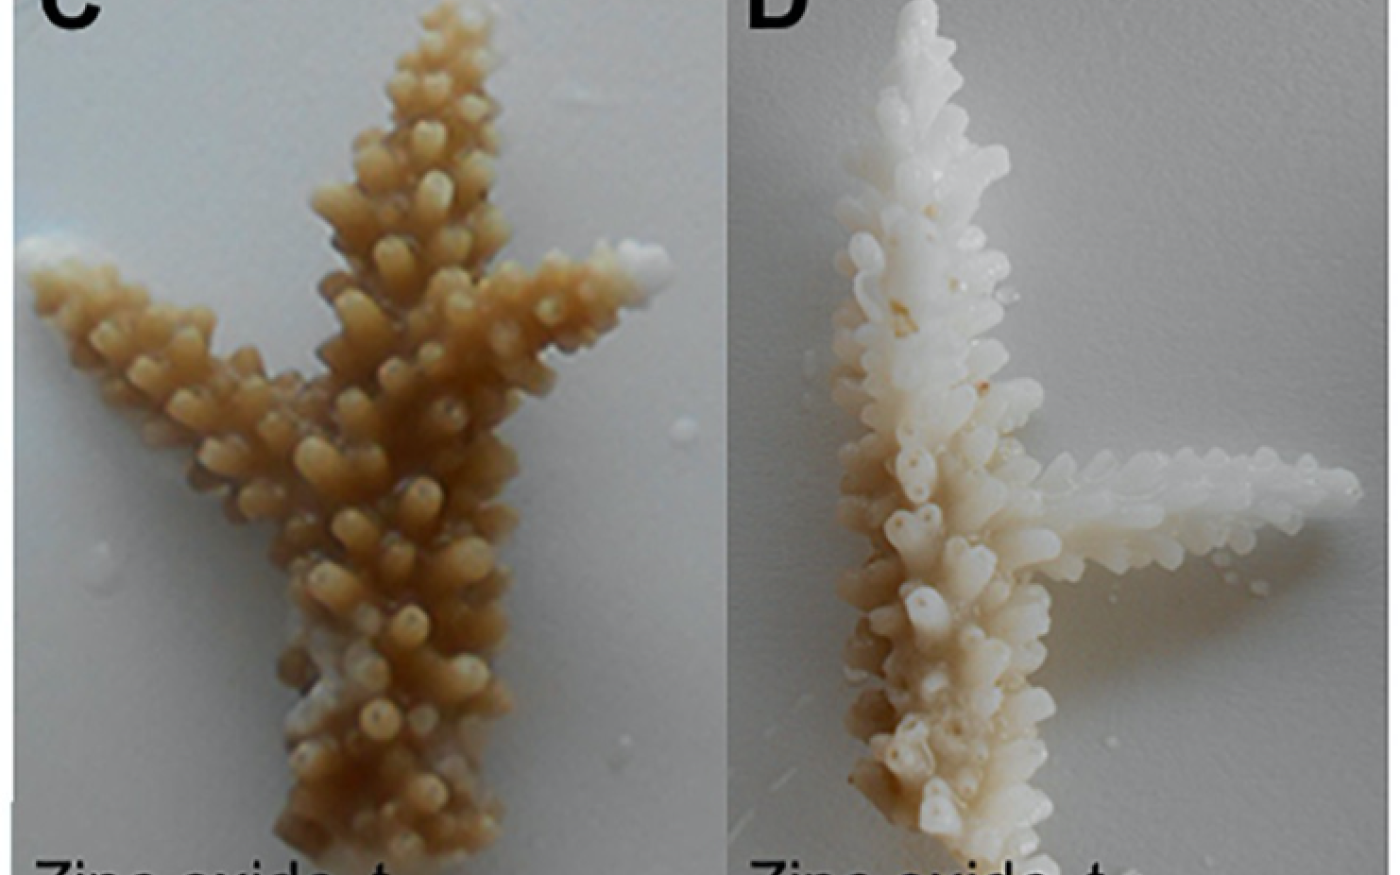 Photographies de coraux exposés à l’oxyde de zinc (C et D) au début de l’expérience et 48 heures plus tard (avec l’aimable autorisation de Cinzia Corinaldesi)